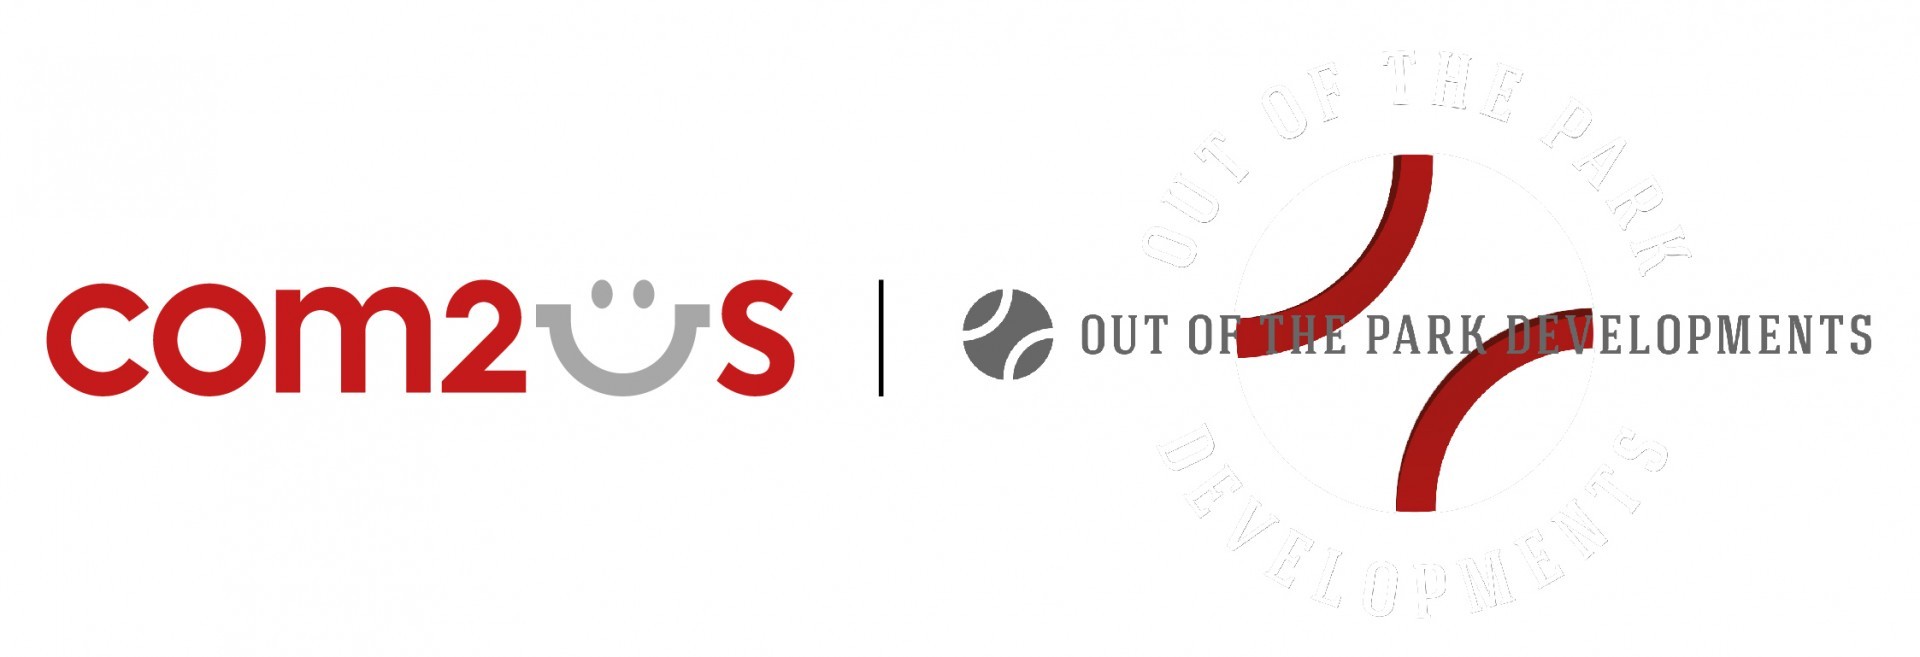 Com2uS 收購德國遊戲公司 OOTP　將快速拓展海外實力創造雙贏局面